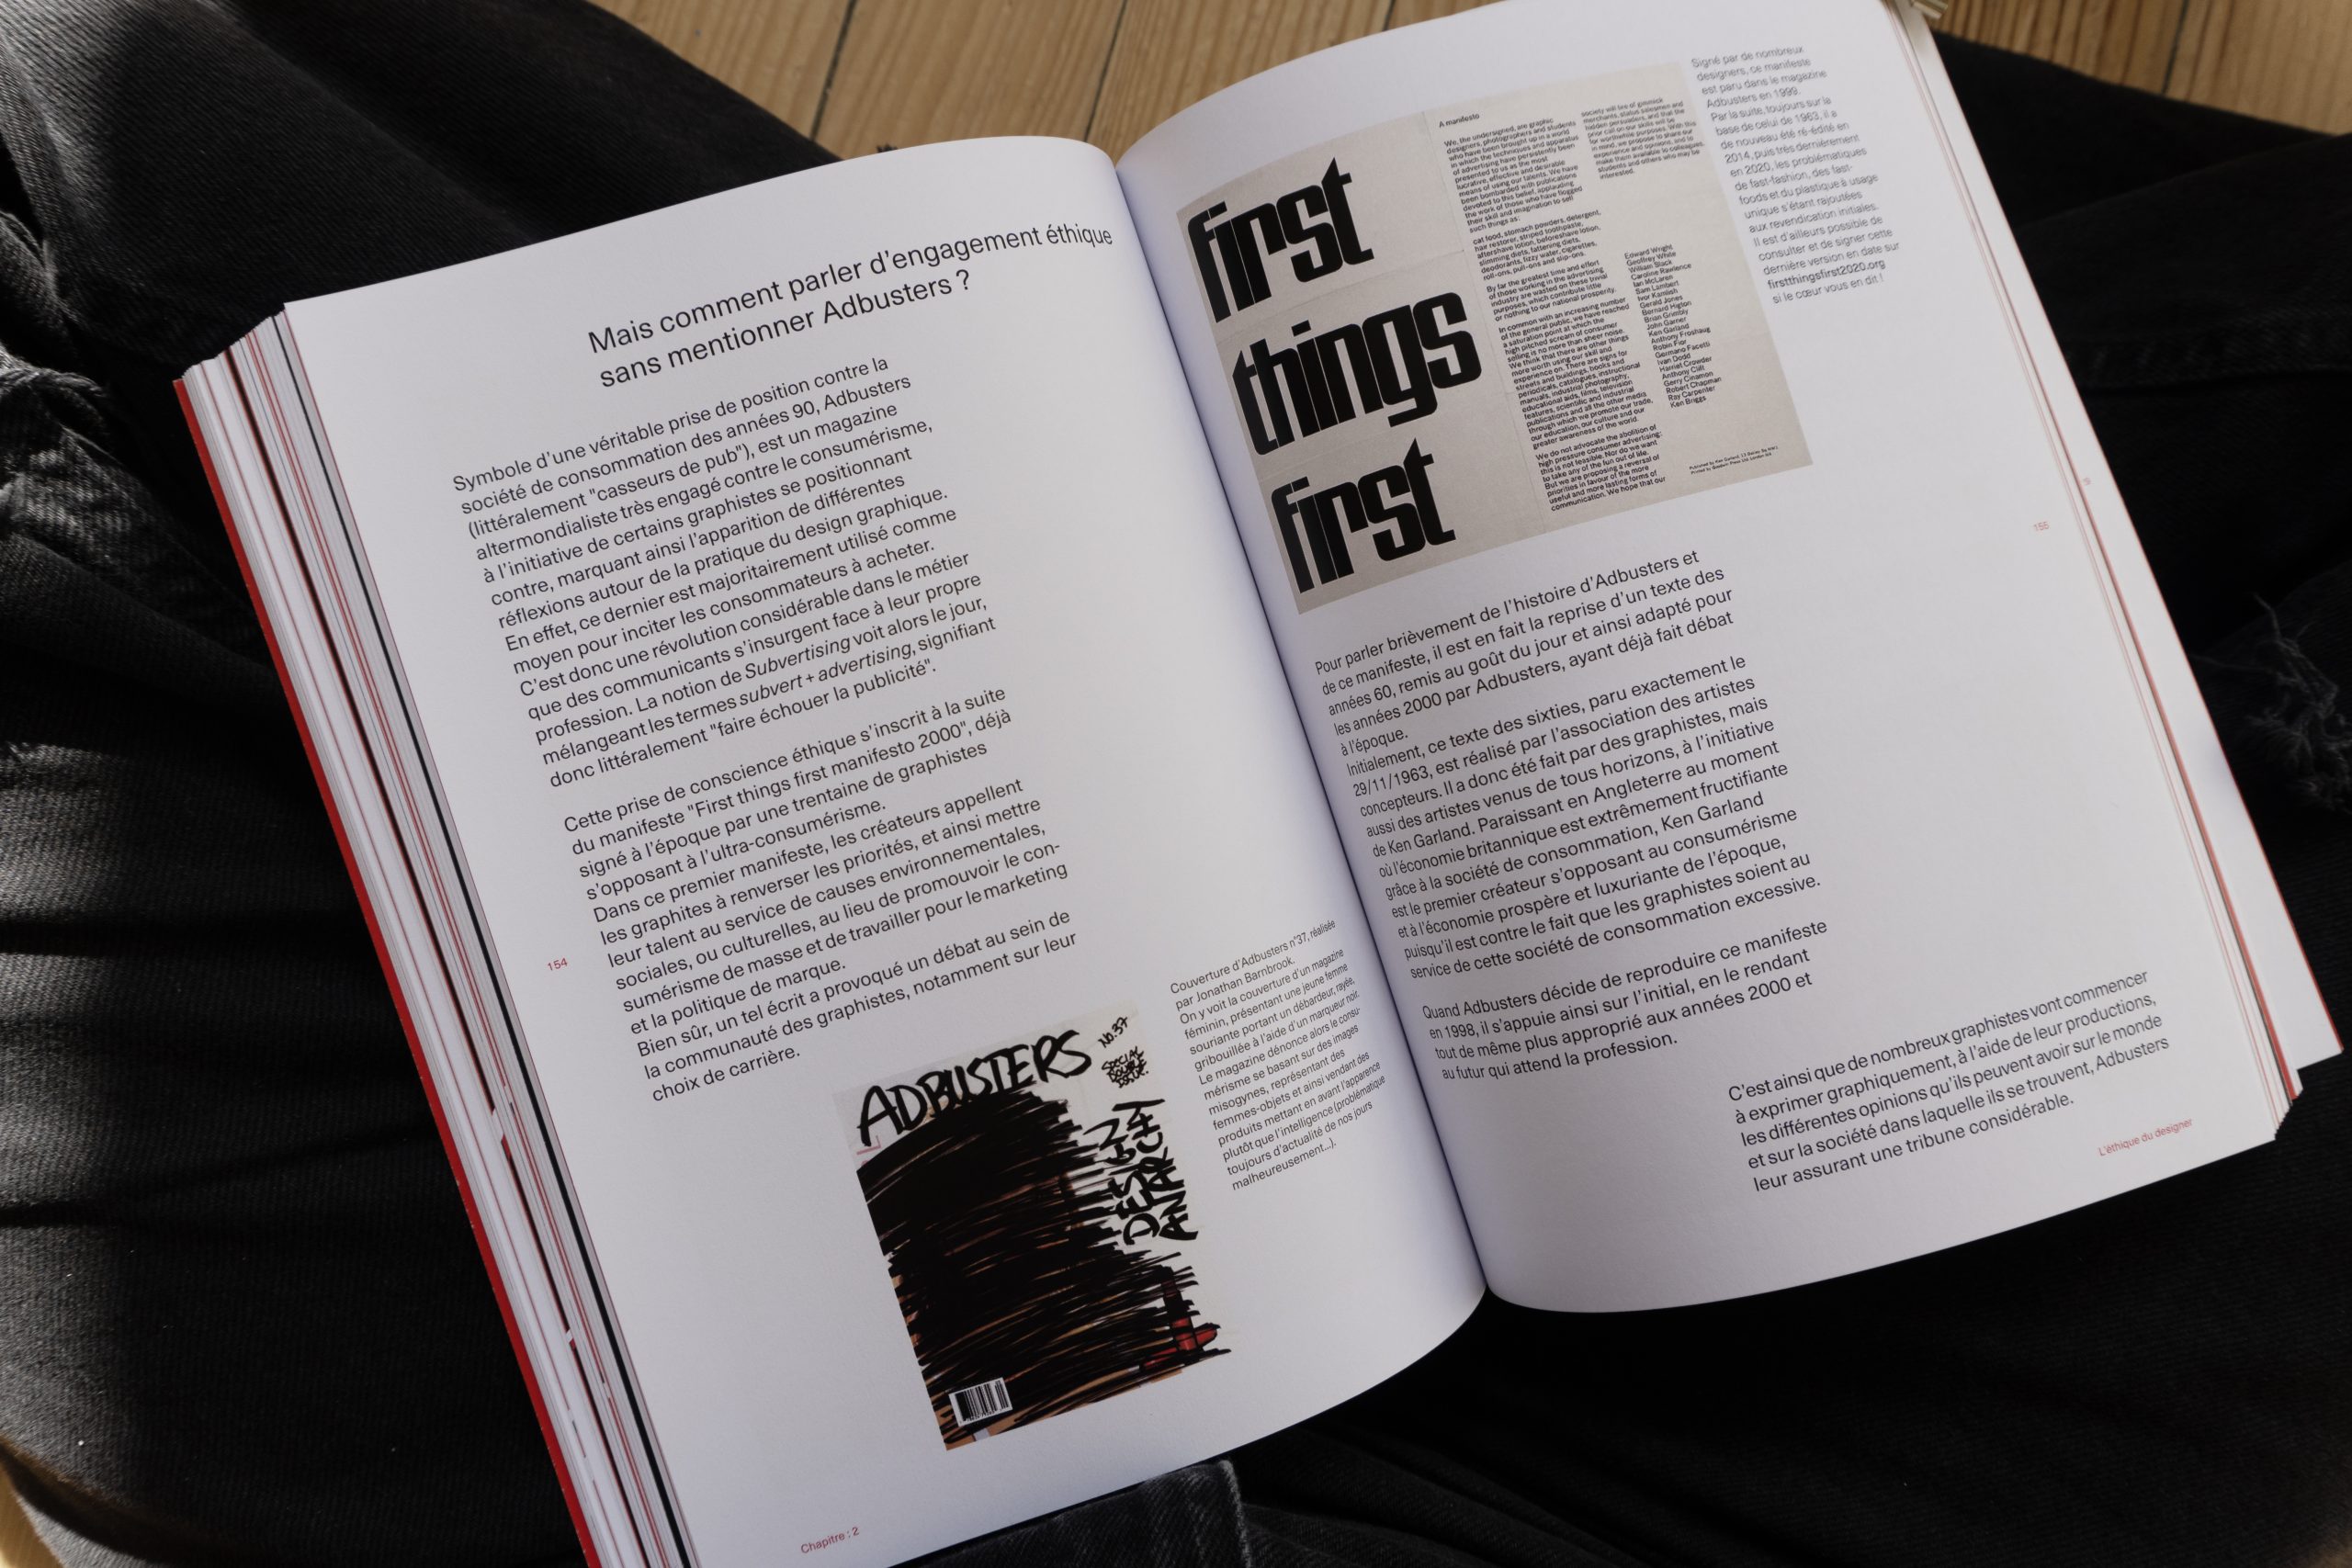 Visuel de l'intérieur du livre montrant une double page du chapitre de l'éthique mettant en avant le magasine adbuster et le first thing first manifesto.